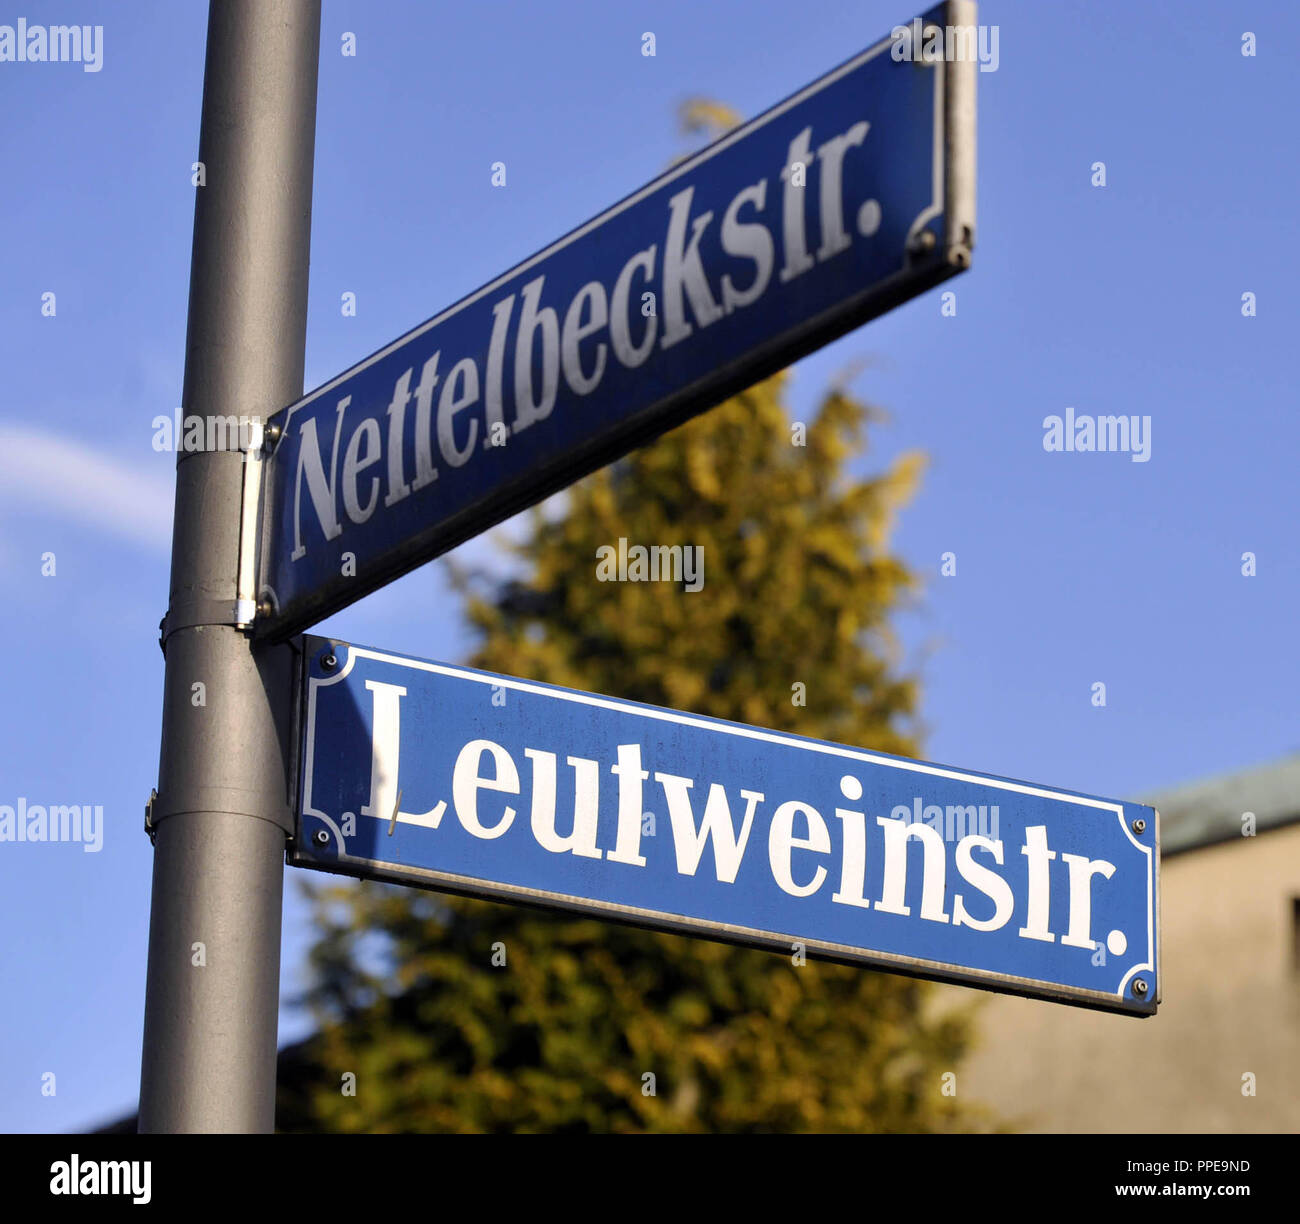 Standorte und Straßennamen aus der Kolonialzeit, hier der Nettelbeckstrasse Ecke Leutweinstrasse, eine Namensänderung zu Diskussion immer wieder kommt. Stockfoto